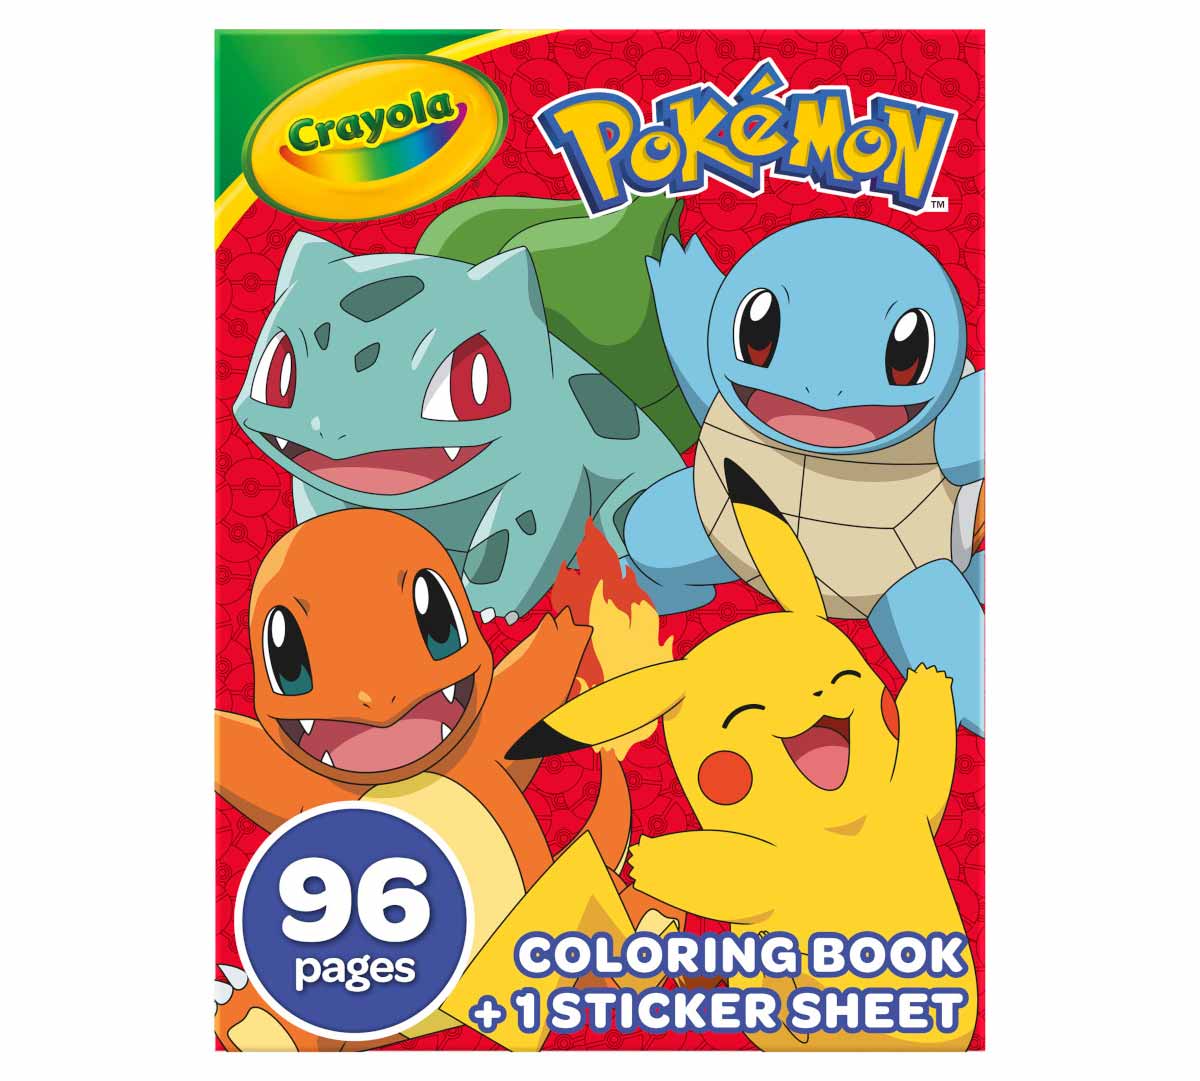 https://shop.crayola.com/on/demandware.static/-/Sites-crayola-storefront/default/dwabcad33d/images/04-2732_Coloring-Book_Pokemon_96pg_PDP_01.jpg